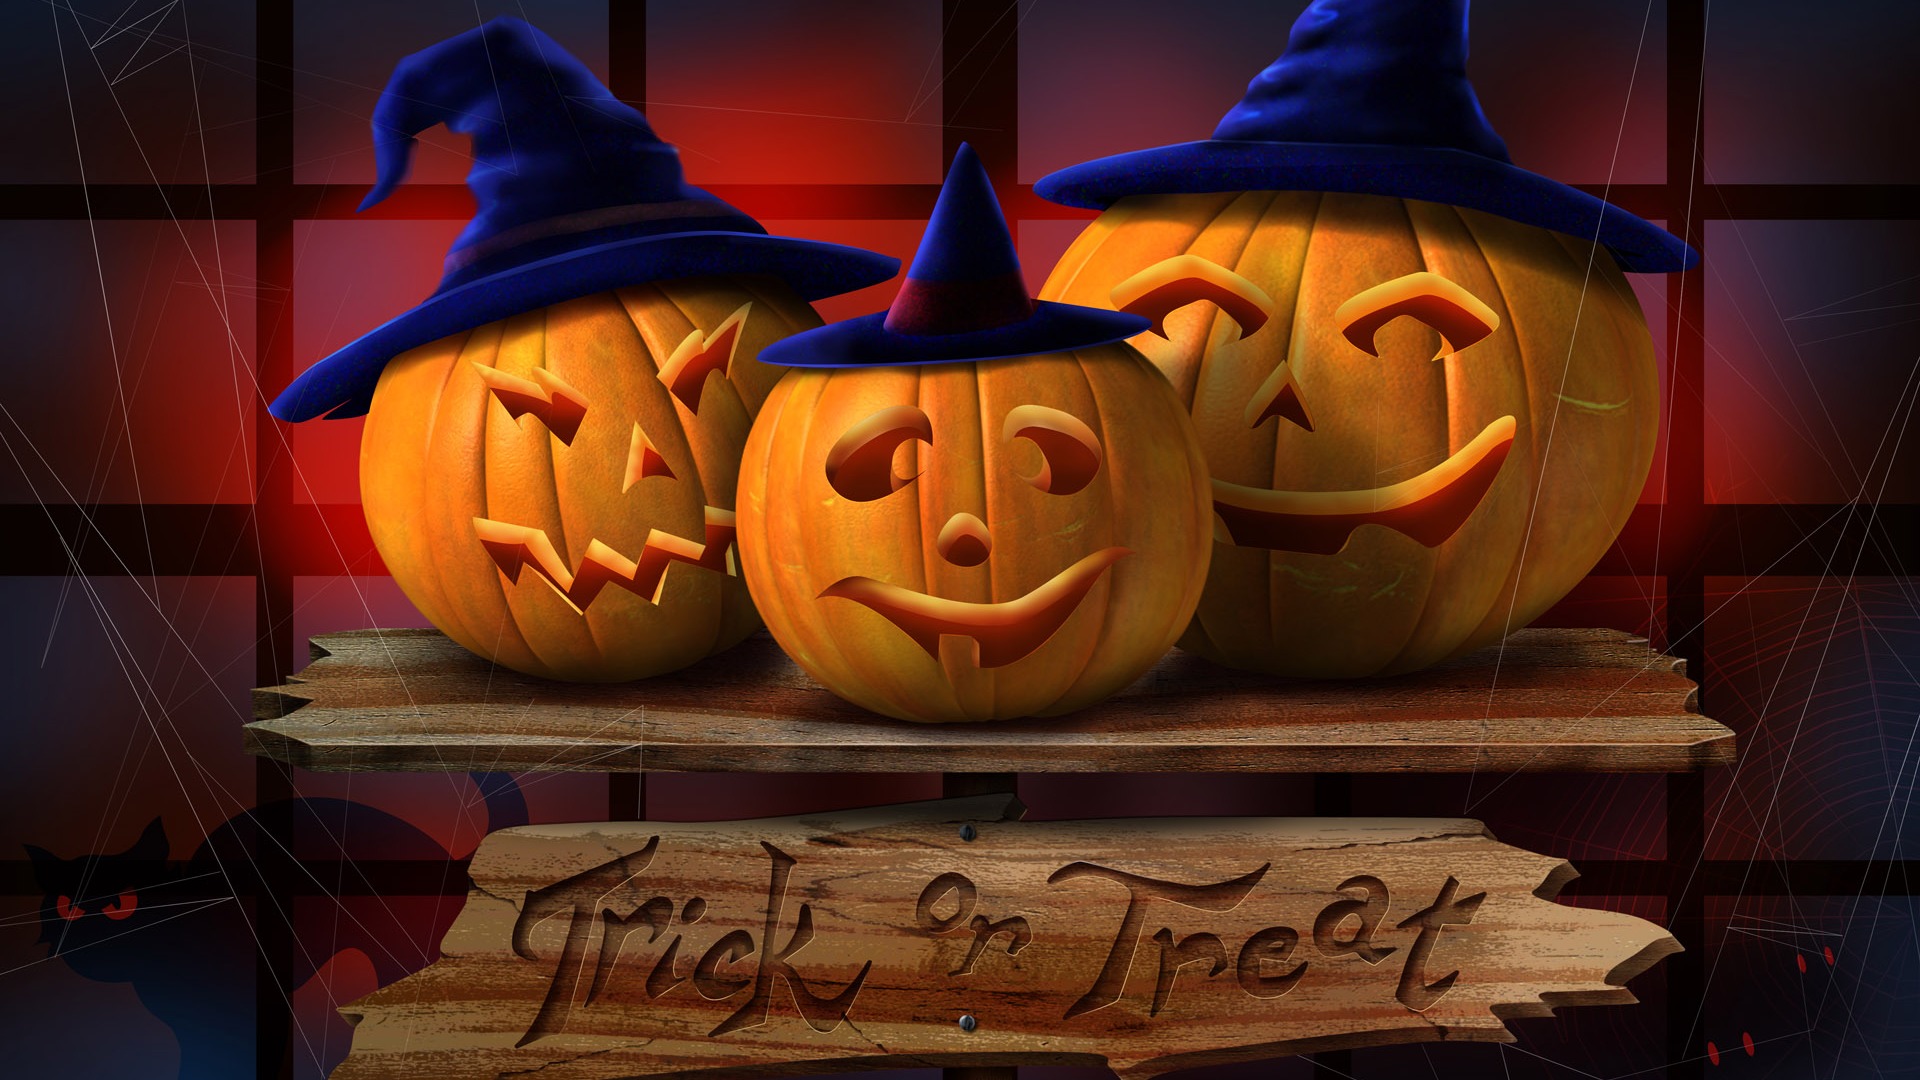 Fondos de Halloween temáticos (3) #5 - 1920x1080